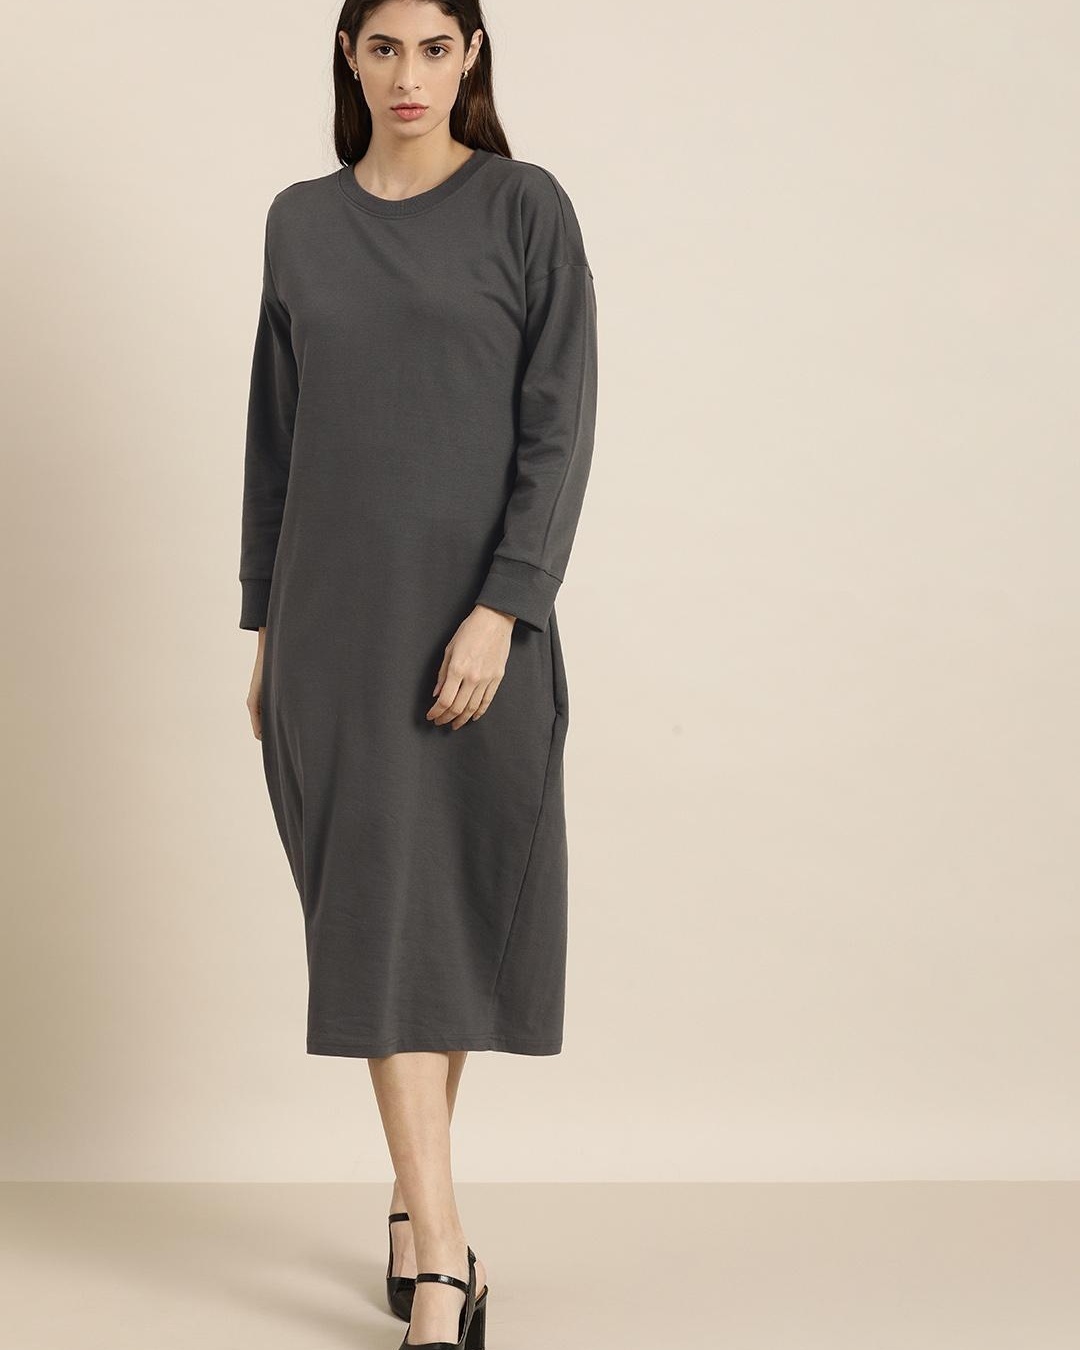 Buy Women's Grey Dress for Women Grey Online at Bewakoof